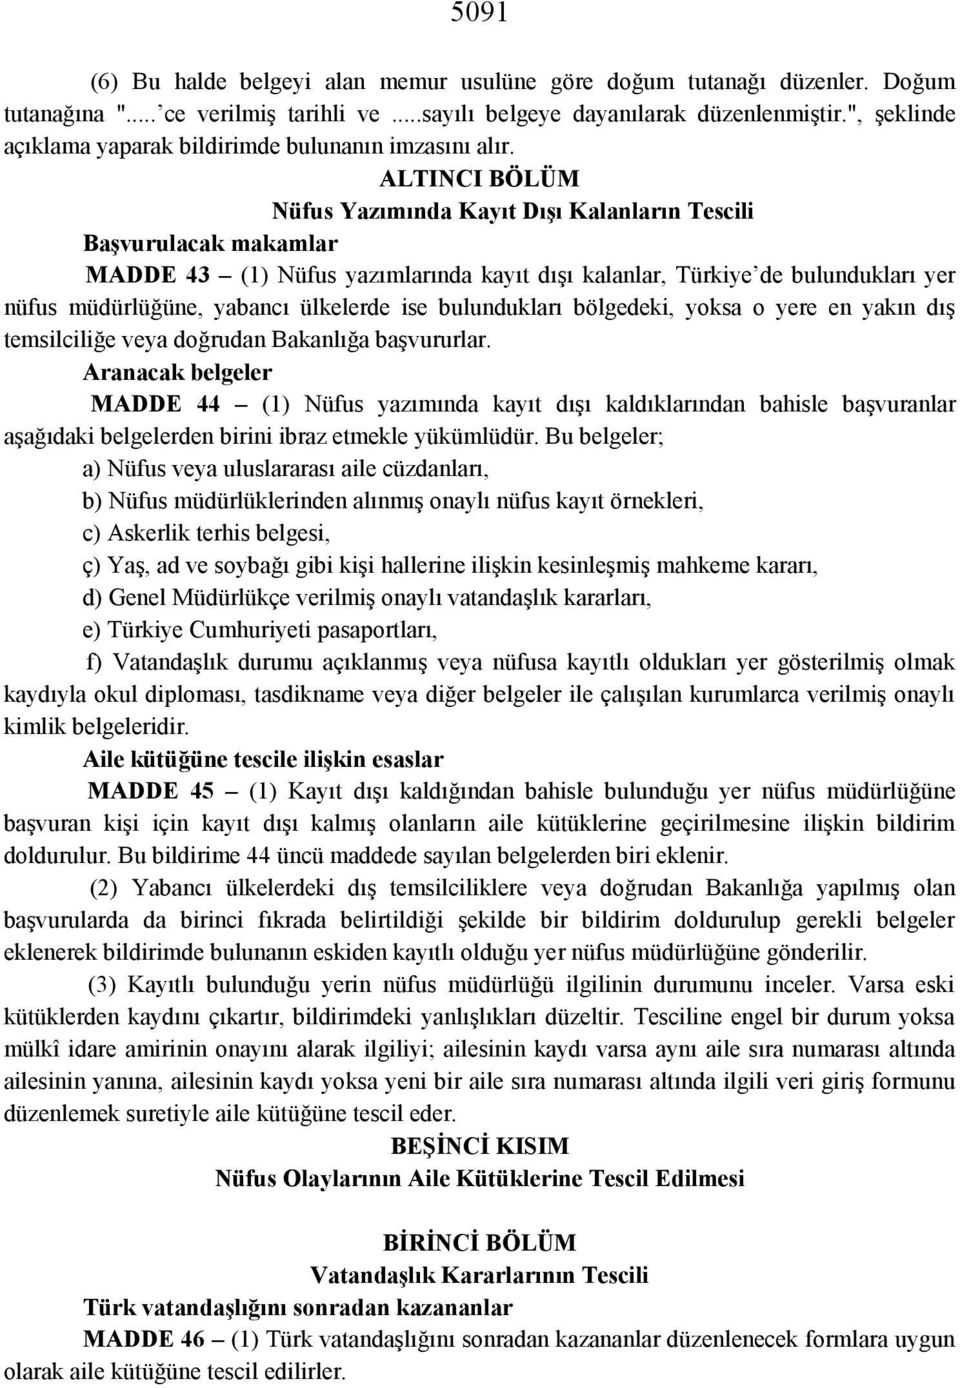 ALTINCI BÖLÜM Nüfus Yazımında Kayıt Dışı Kalanların Tescili Başvurulacak makamlar MADDE 43 (1) Nüfus yazımlarında kayı t dışı kalanlar, Türkiye de bulundukları yer nüfus müdürlüğüne, yabancı